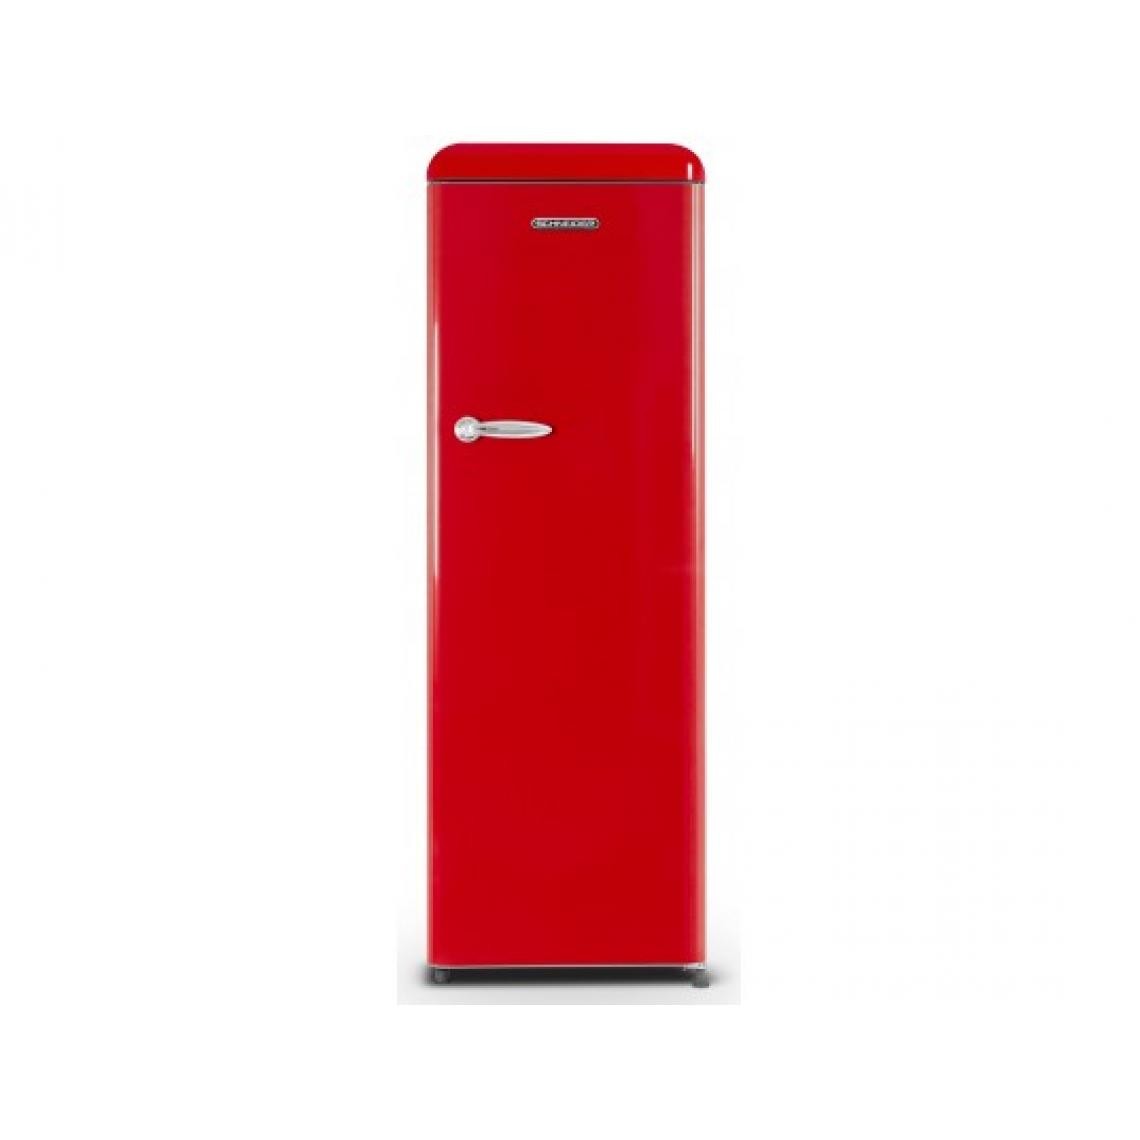 Schneider - Réfrigérateur 1 porte SCCL329VR - Réfrigérateur